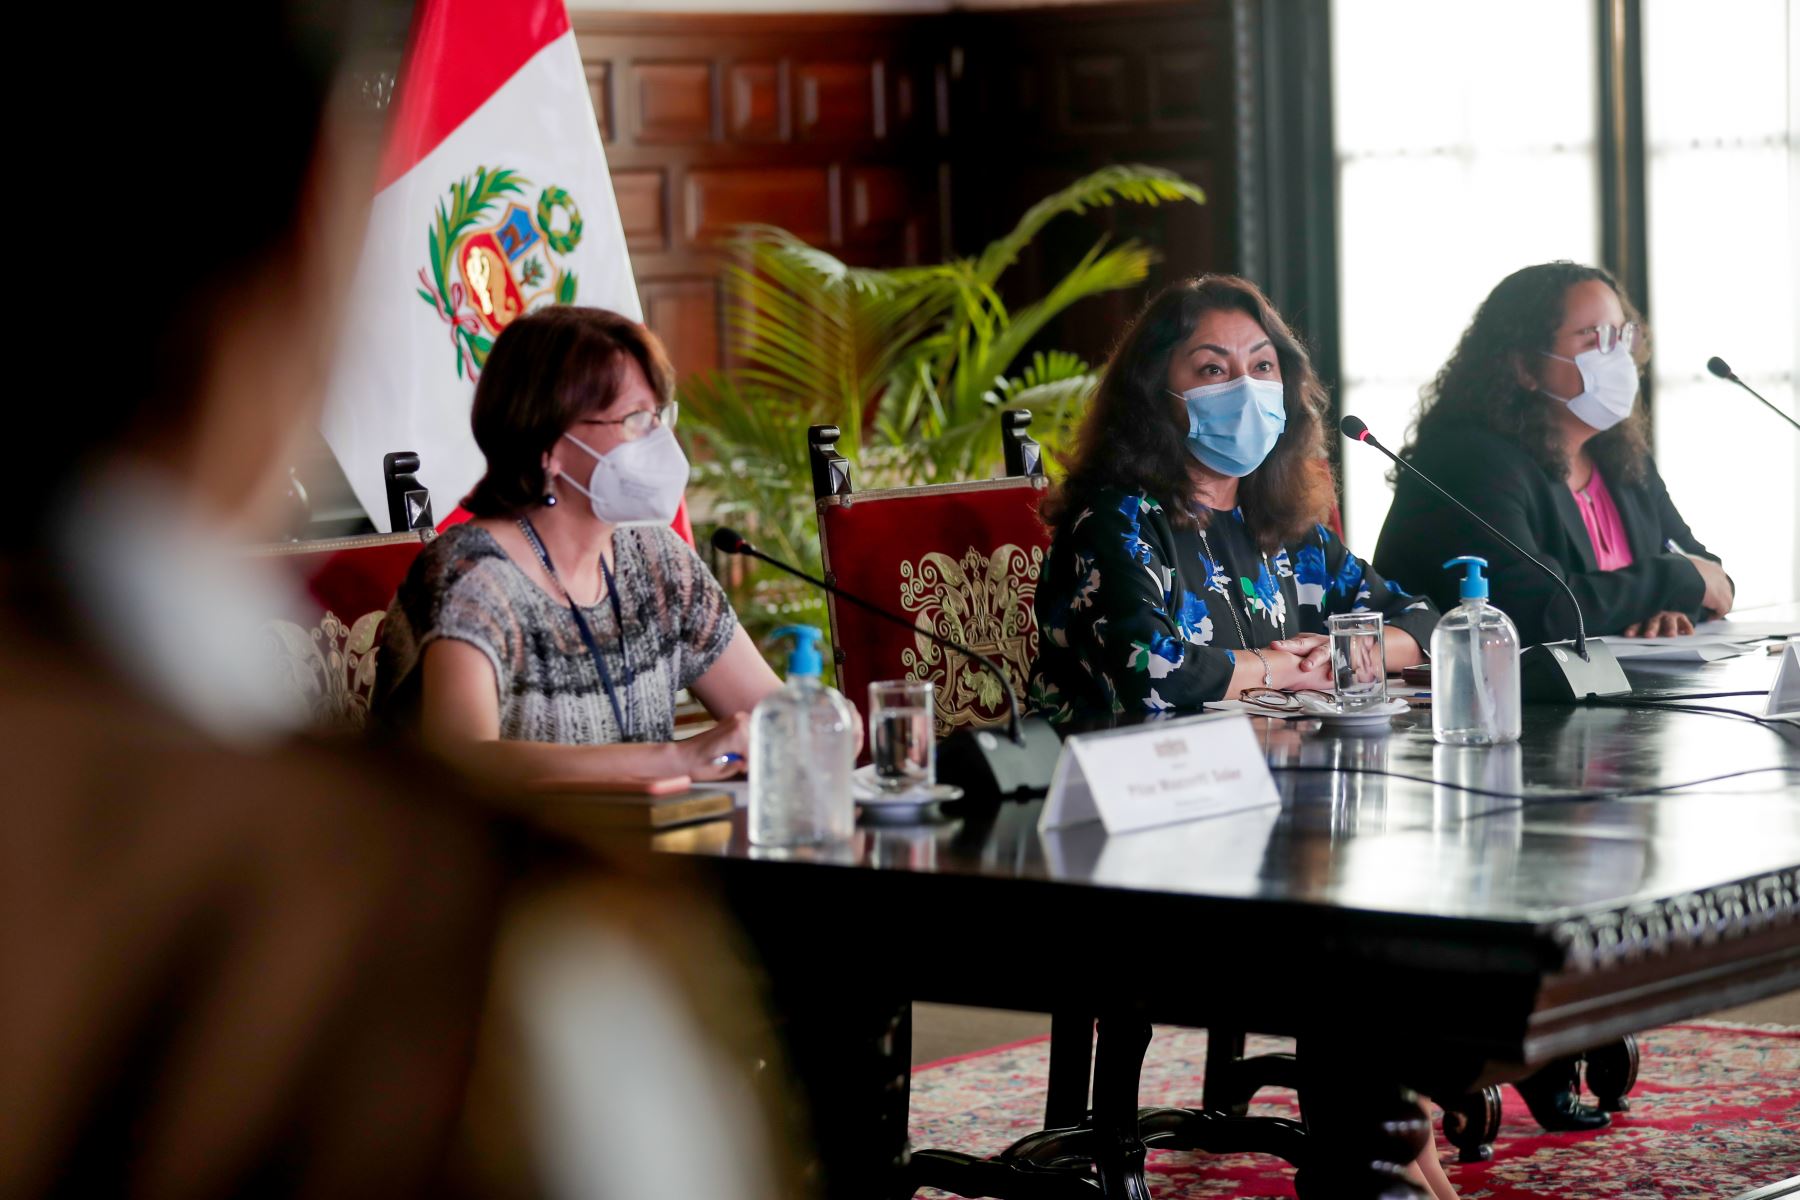 La presidenta del Consejo de Ministros, Violeta Bermúdez, expone los acuerdos adoptados en la sesión de Consejo de Ministros, orientados a la mejora de los servicios públicos y atención de la emergencia sanitaria.
Foto: PCM